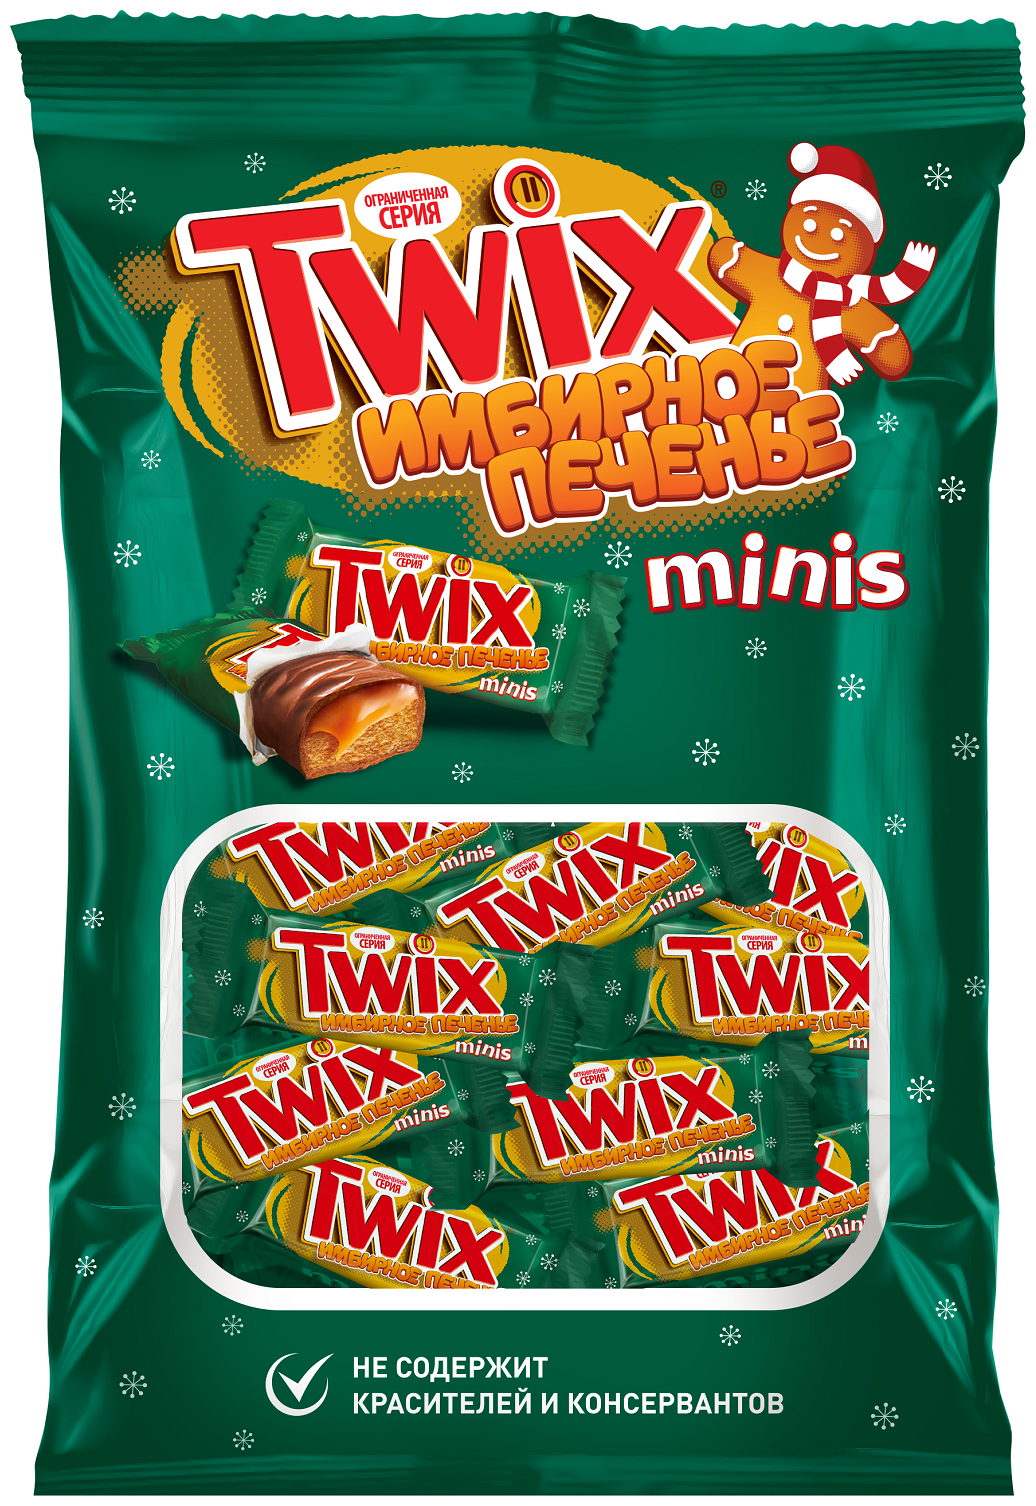 Конфеты Twix minis имбирное печенье — купить по выгодной цене на Яндекс.Маркете